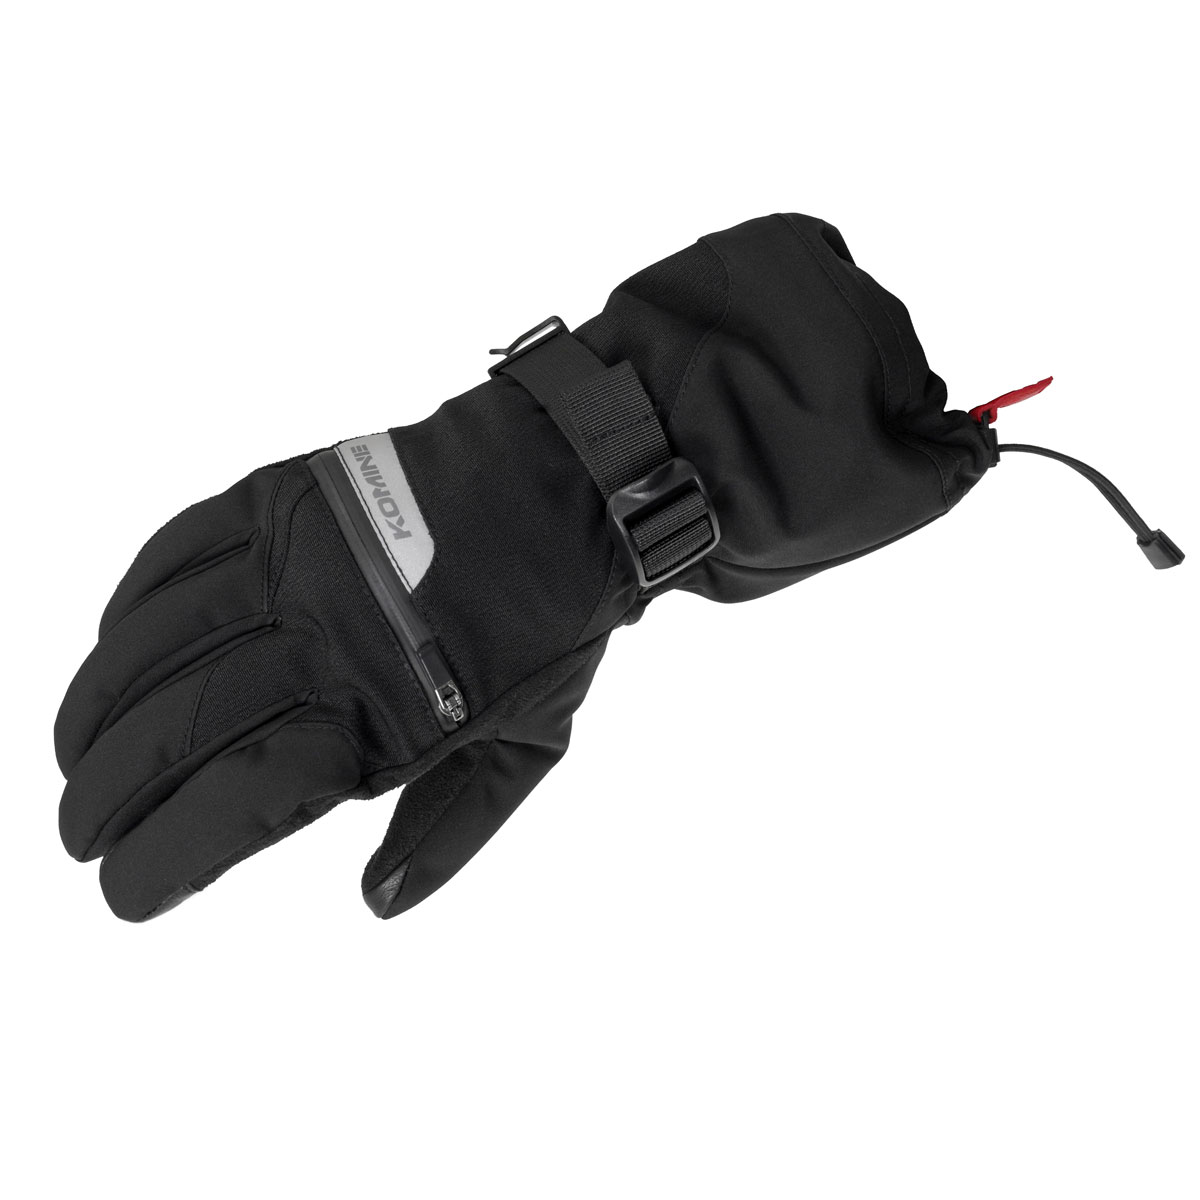 コミネ (Komine) バイク用 グローブ Gloves GK-845 システムウインターロンググローブ ブラック Lサイズ 06-845/BK/L